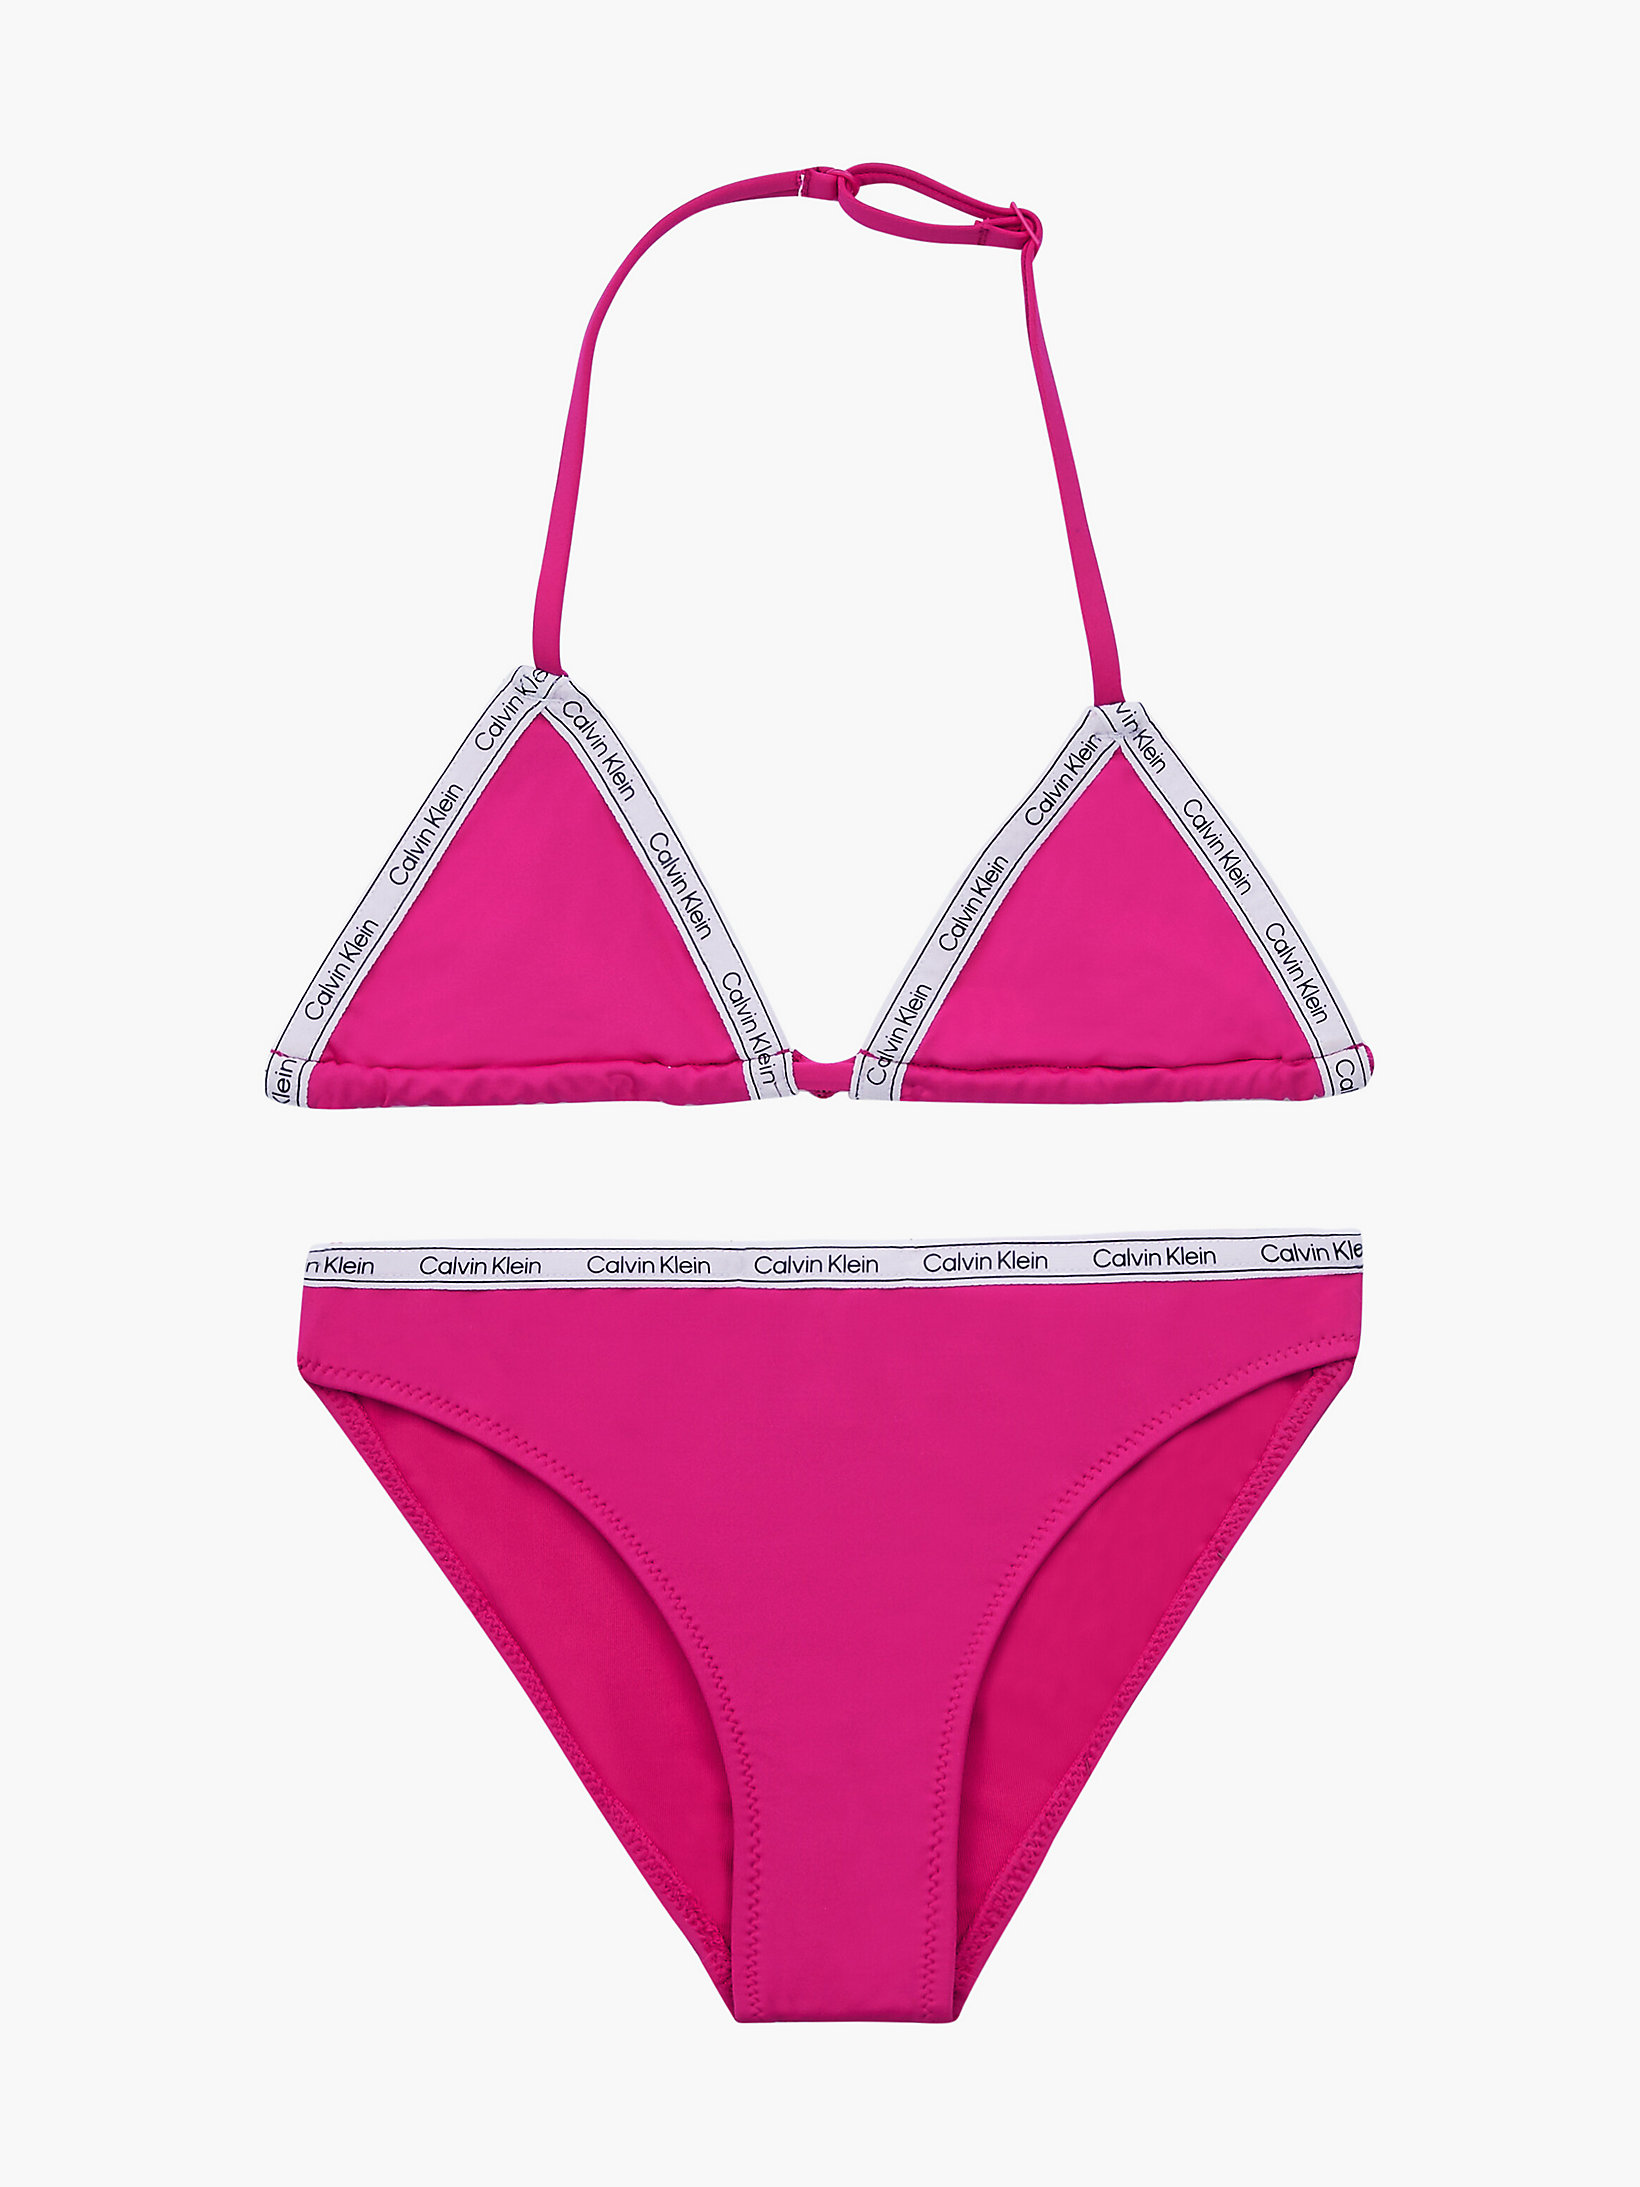 Completo bikini a triangolo bambina Logo Tape Calvin Klein Bambina Sport & Swimwear Costumi da bagno Bikini Bikini a Triangolo 